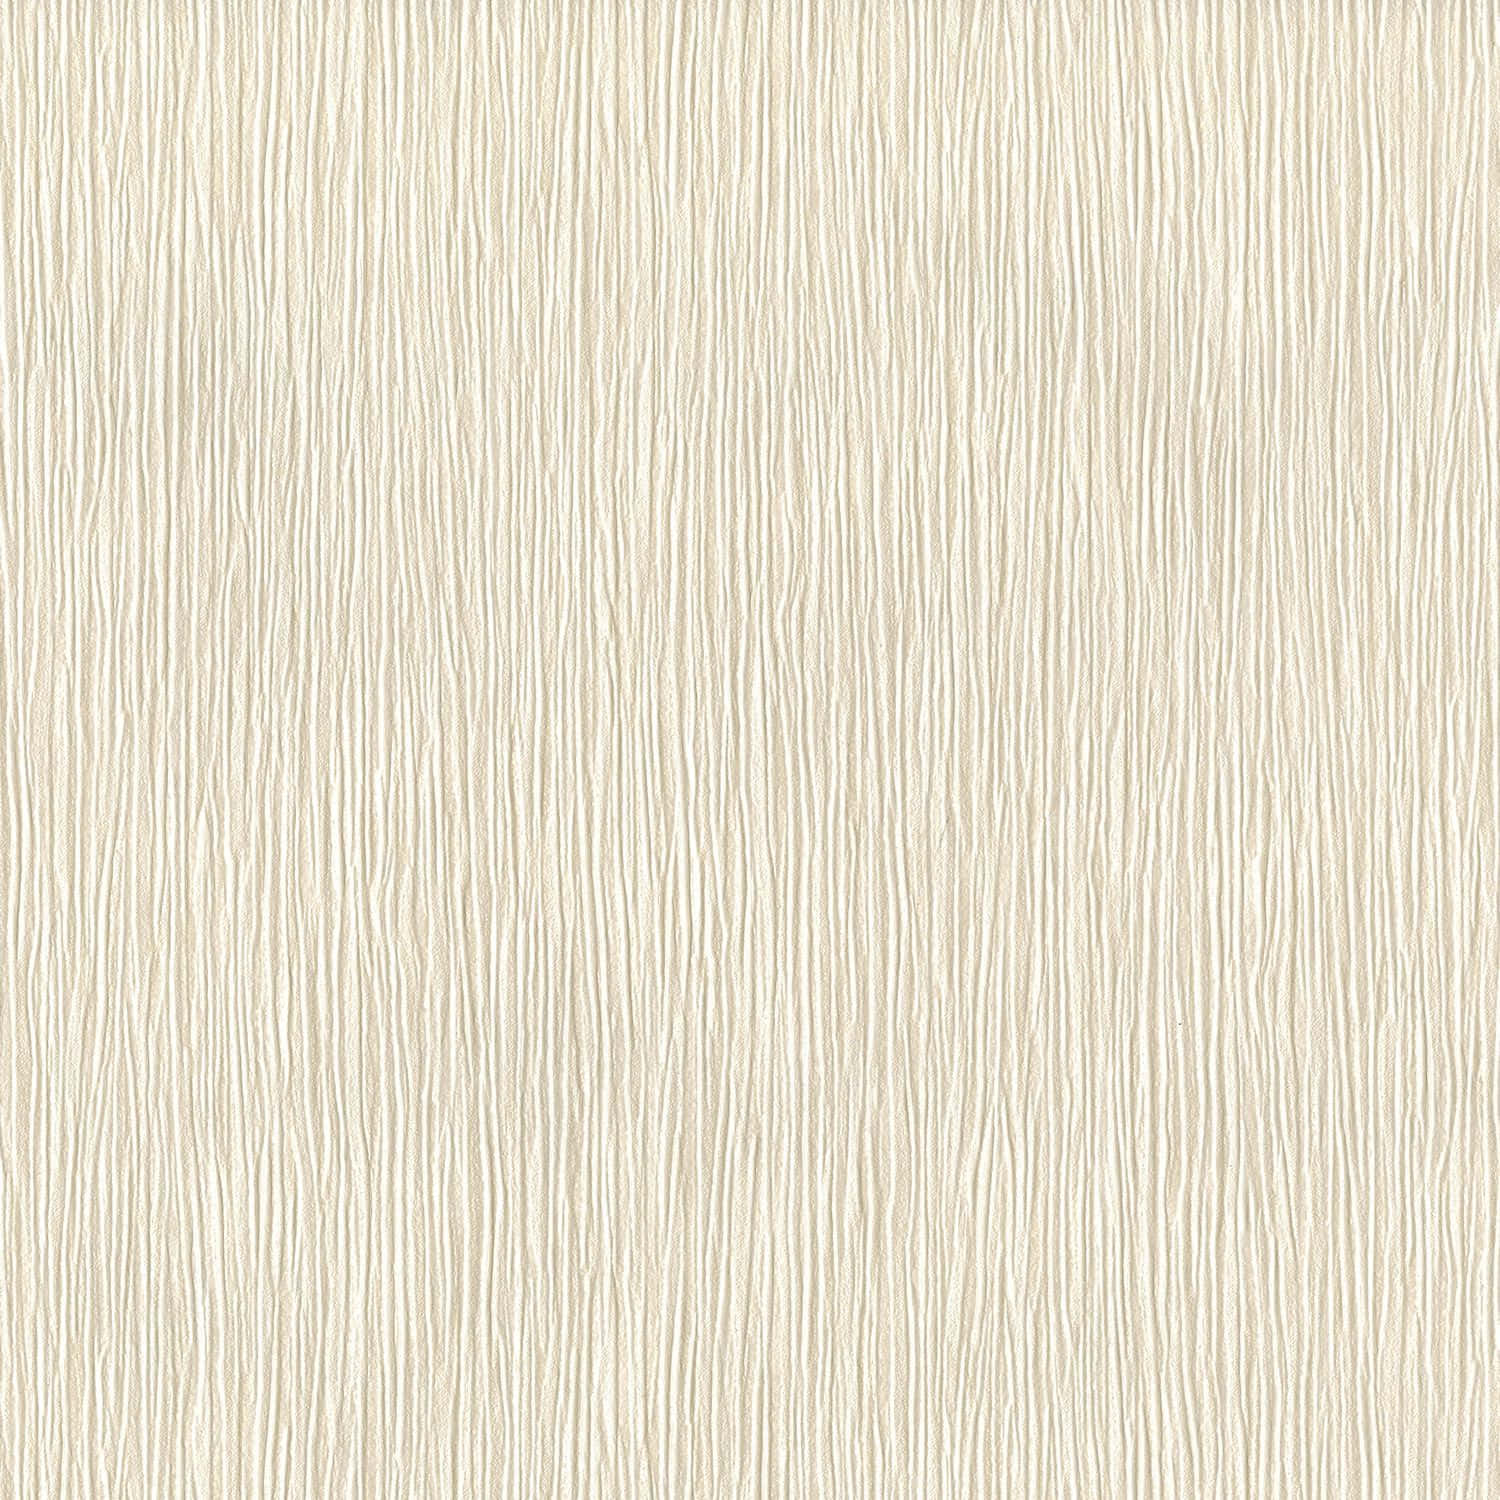 Download Cream Color 1500 X 1500 Wallpaper Wallpaper | Wallpapers.com